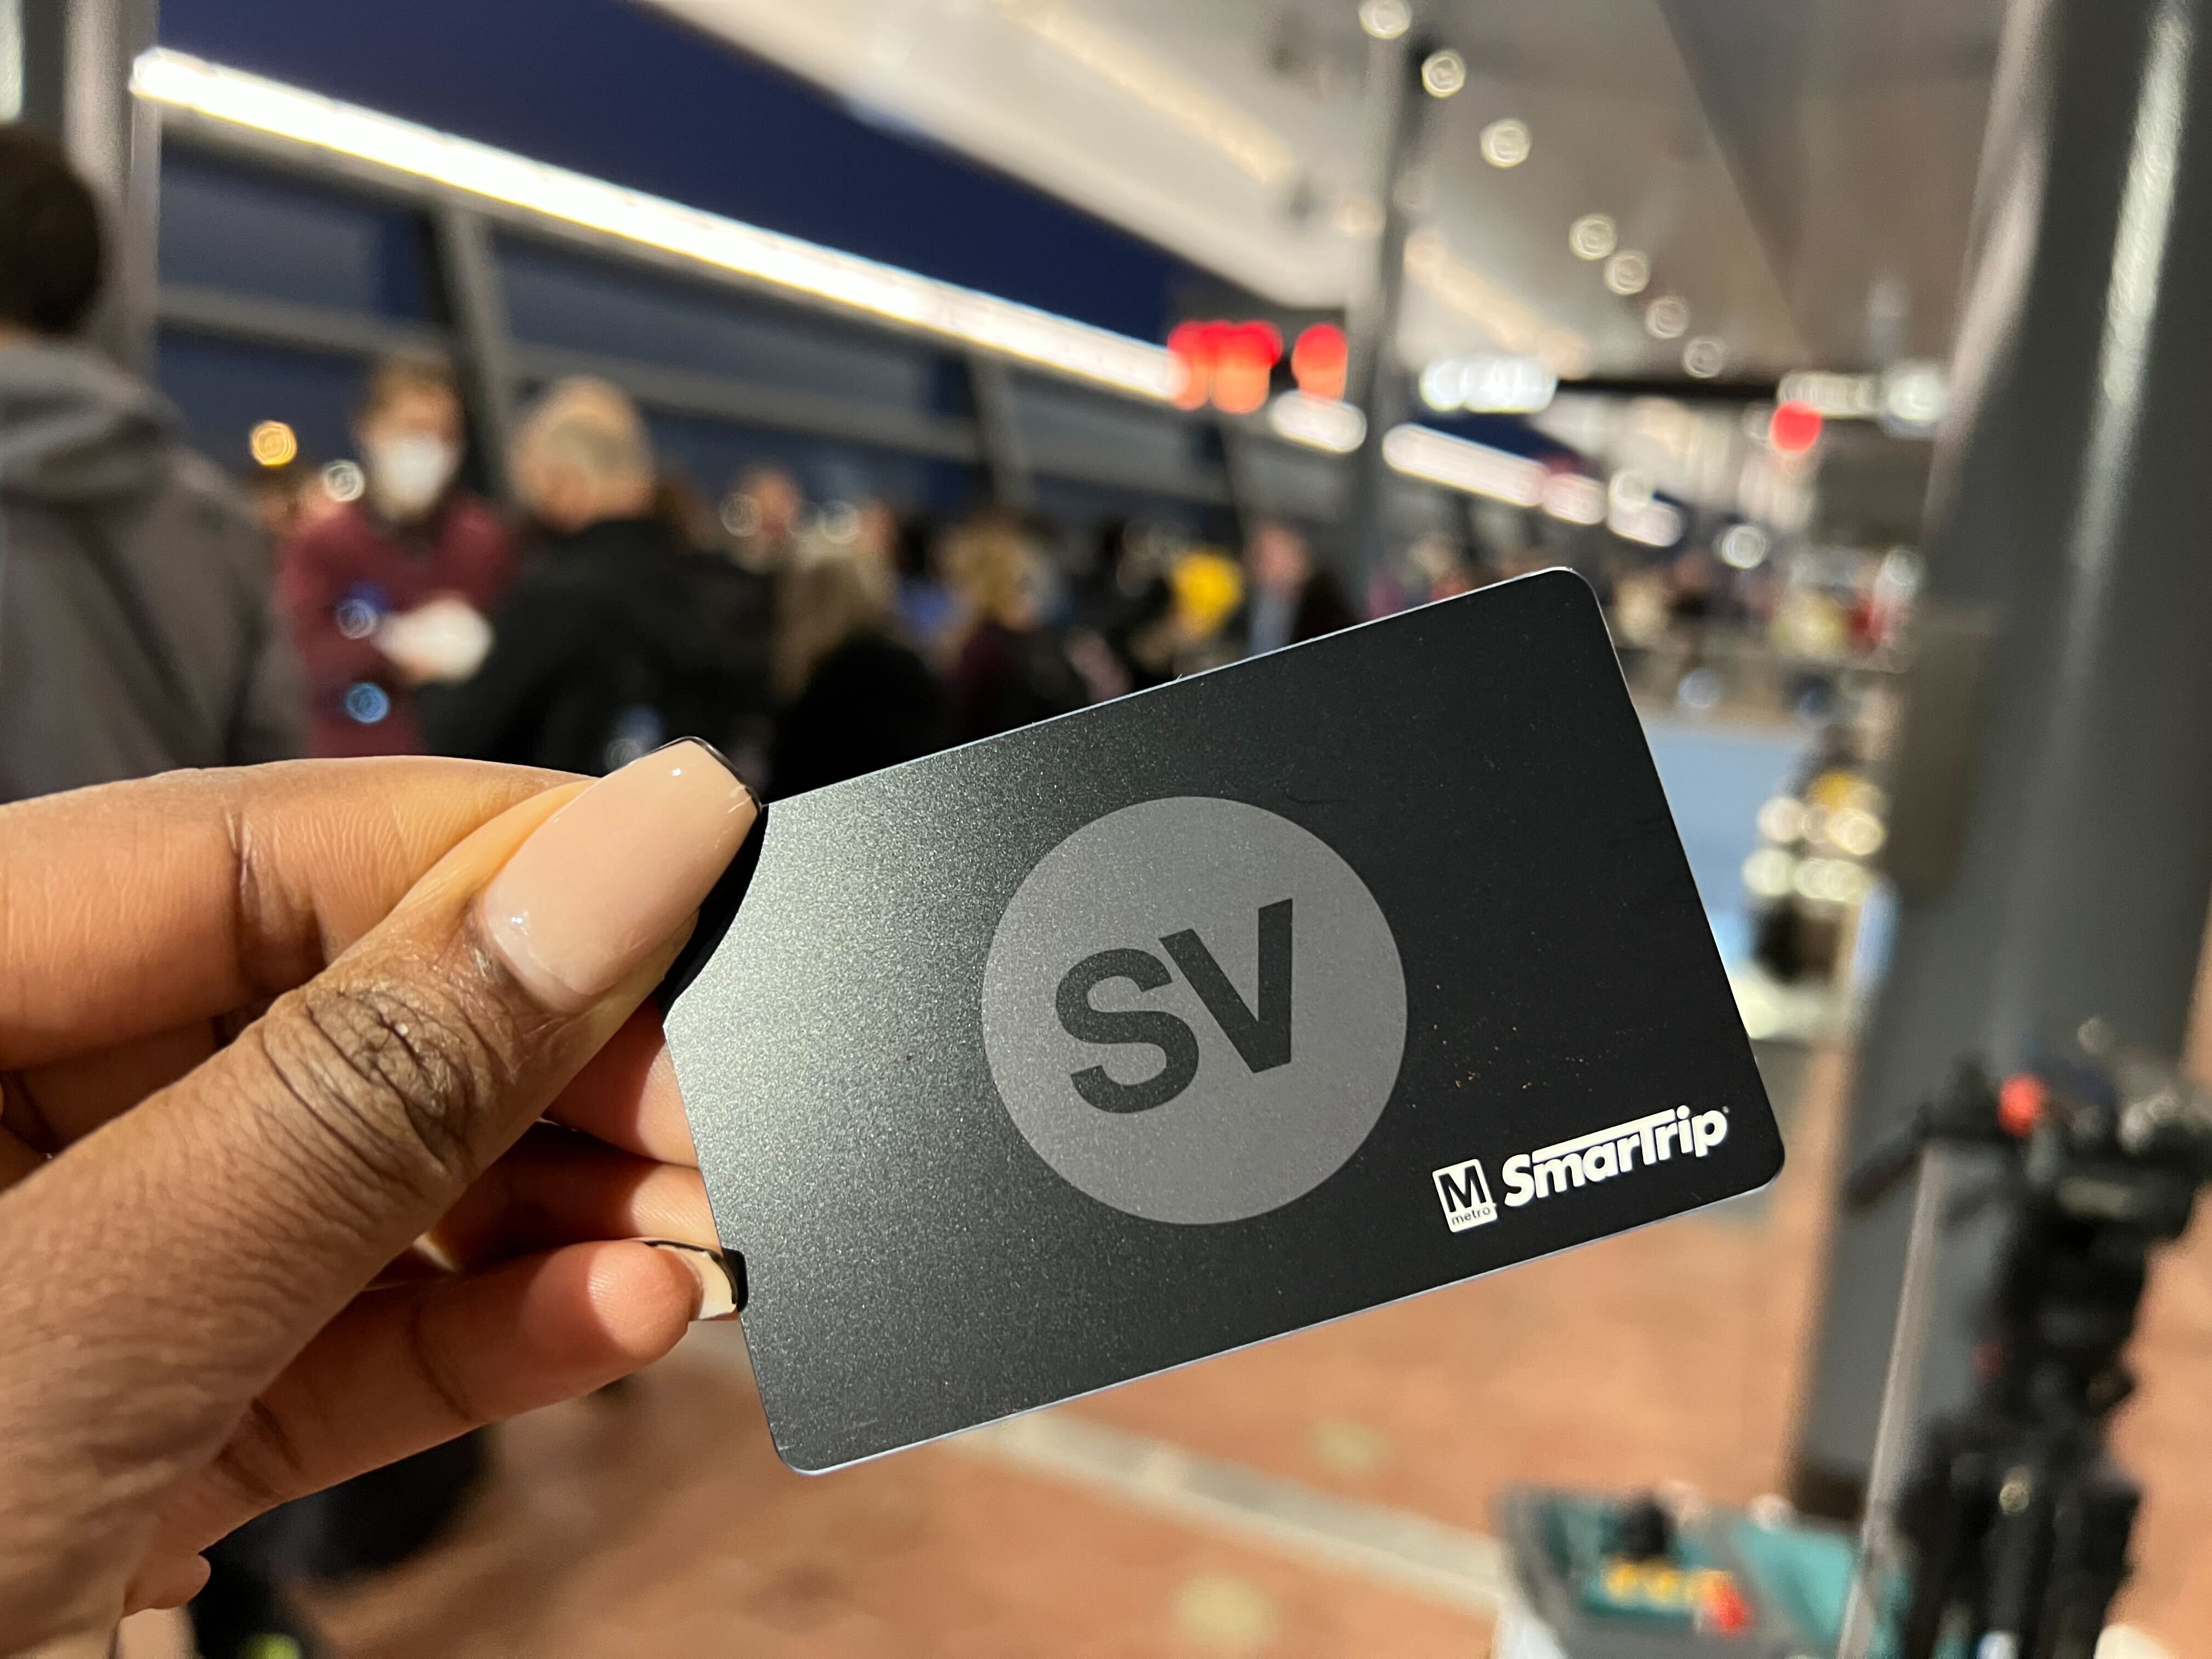 A Silver Line Metro card